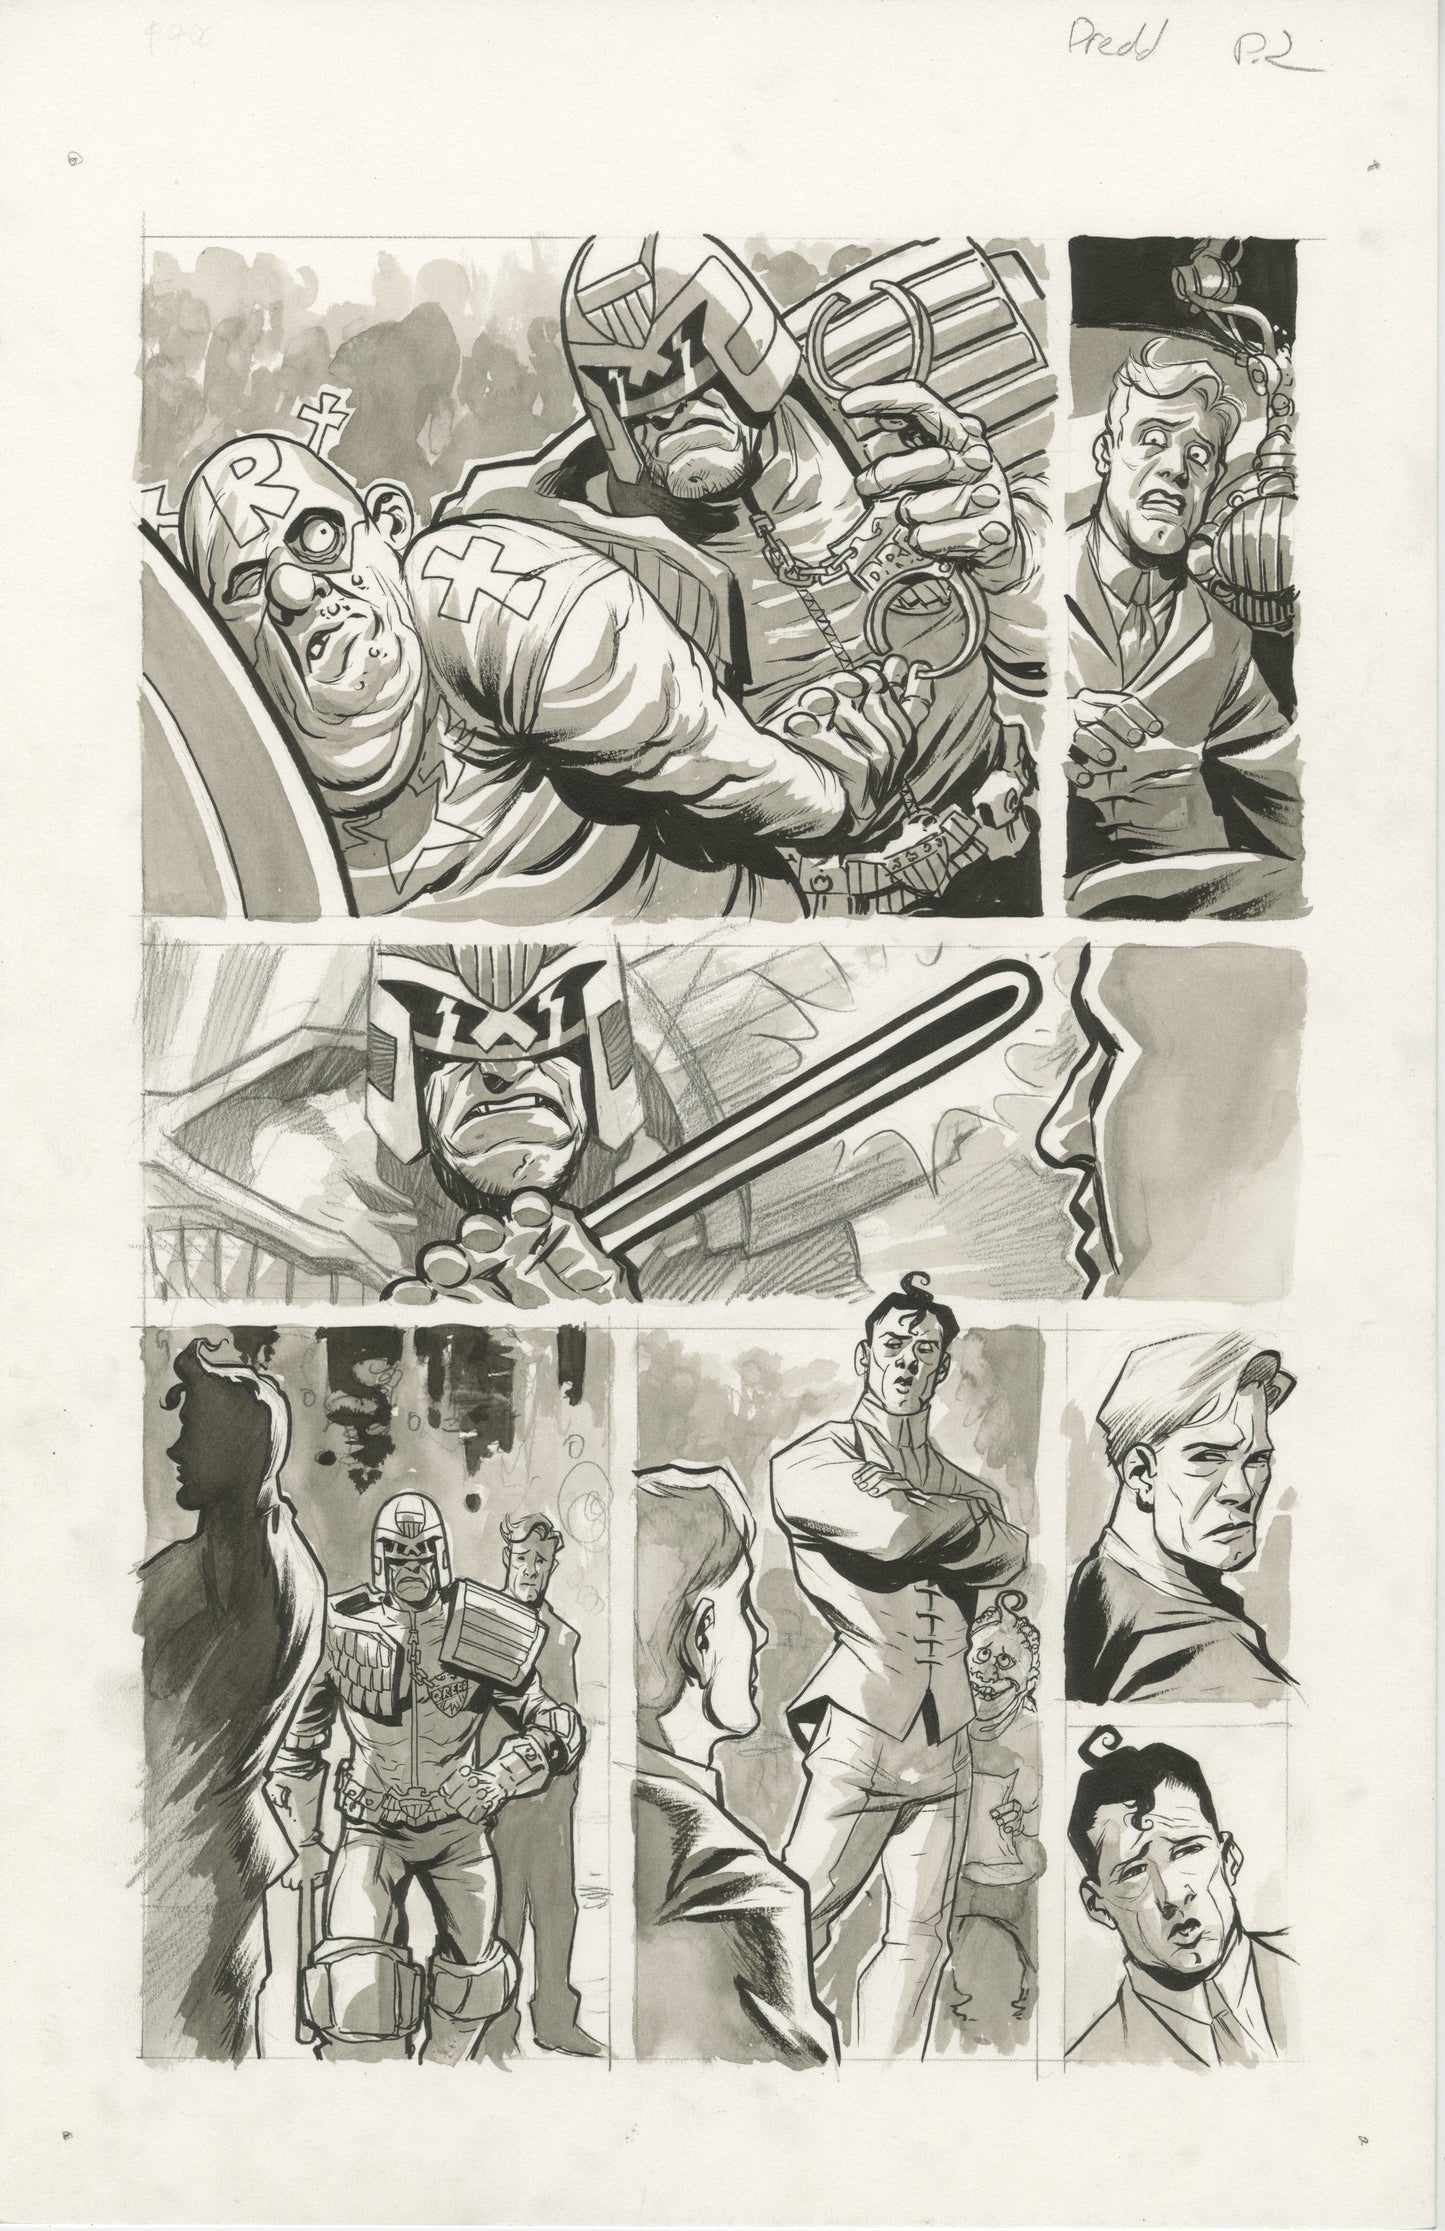 2000 AD / Judge Dredd: Free Comic Book Day, Page #2 (2016)